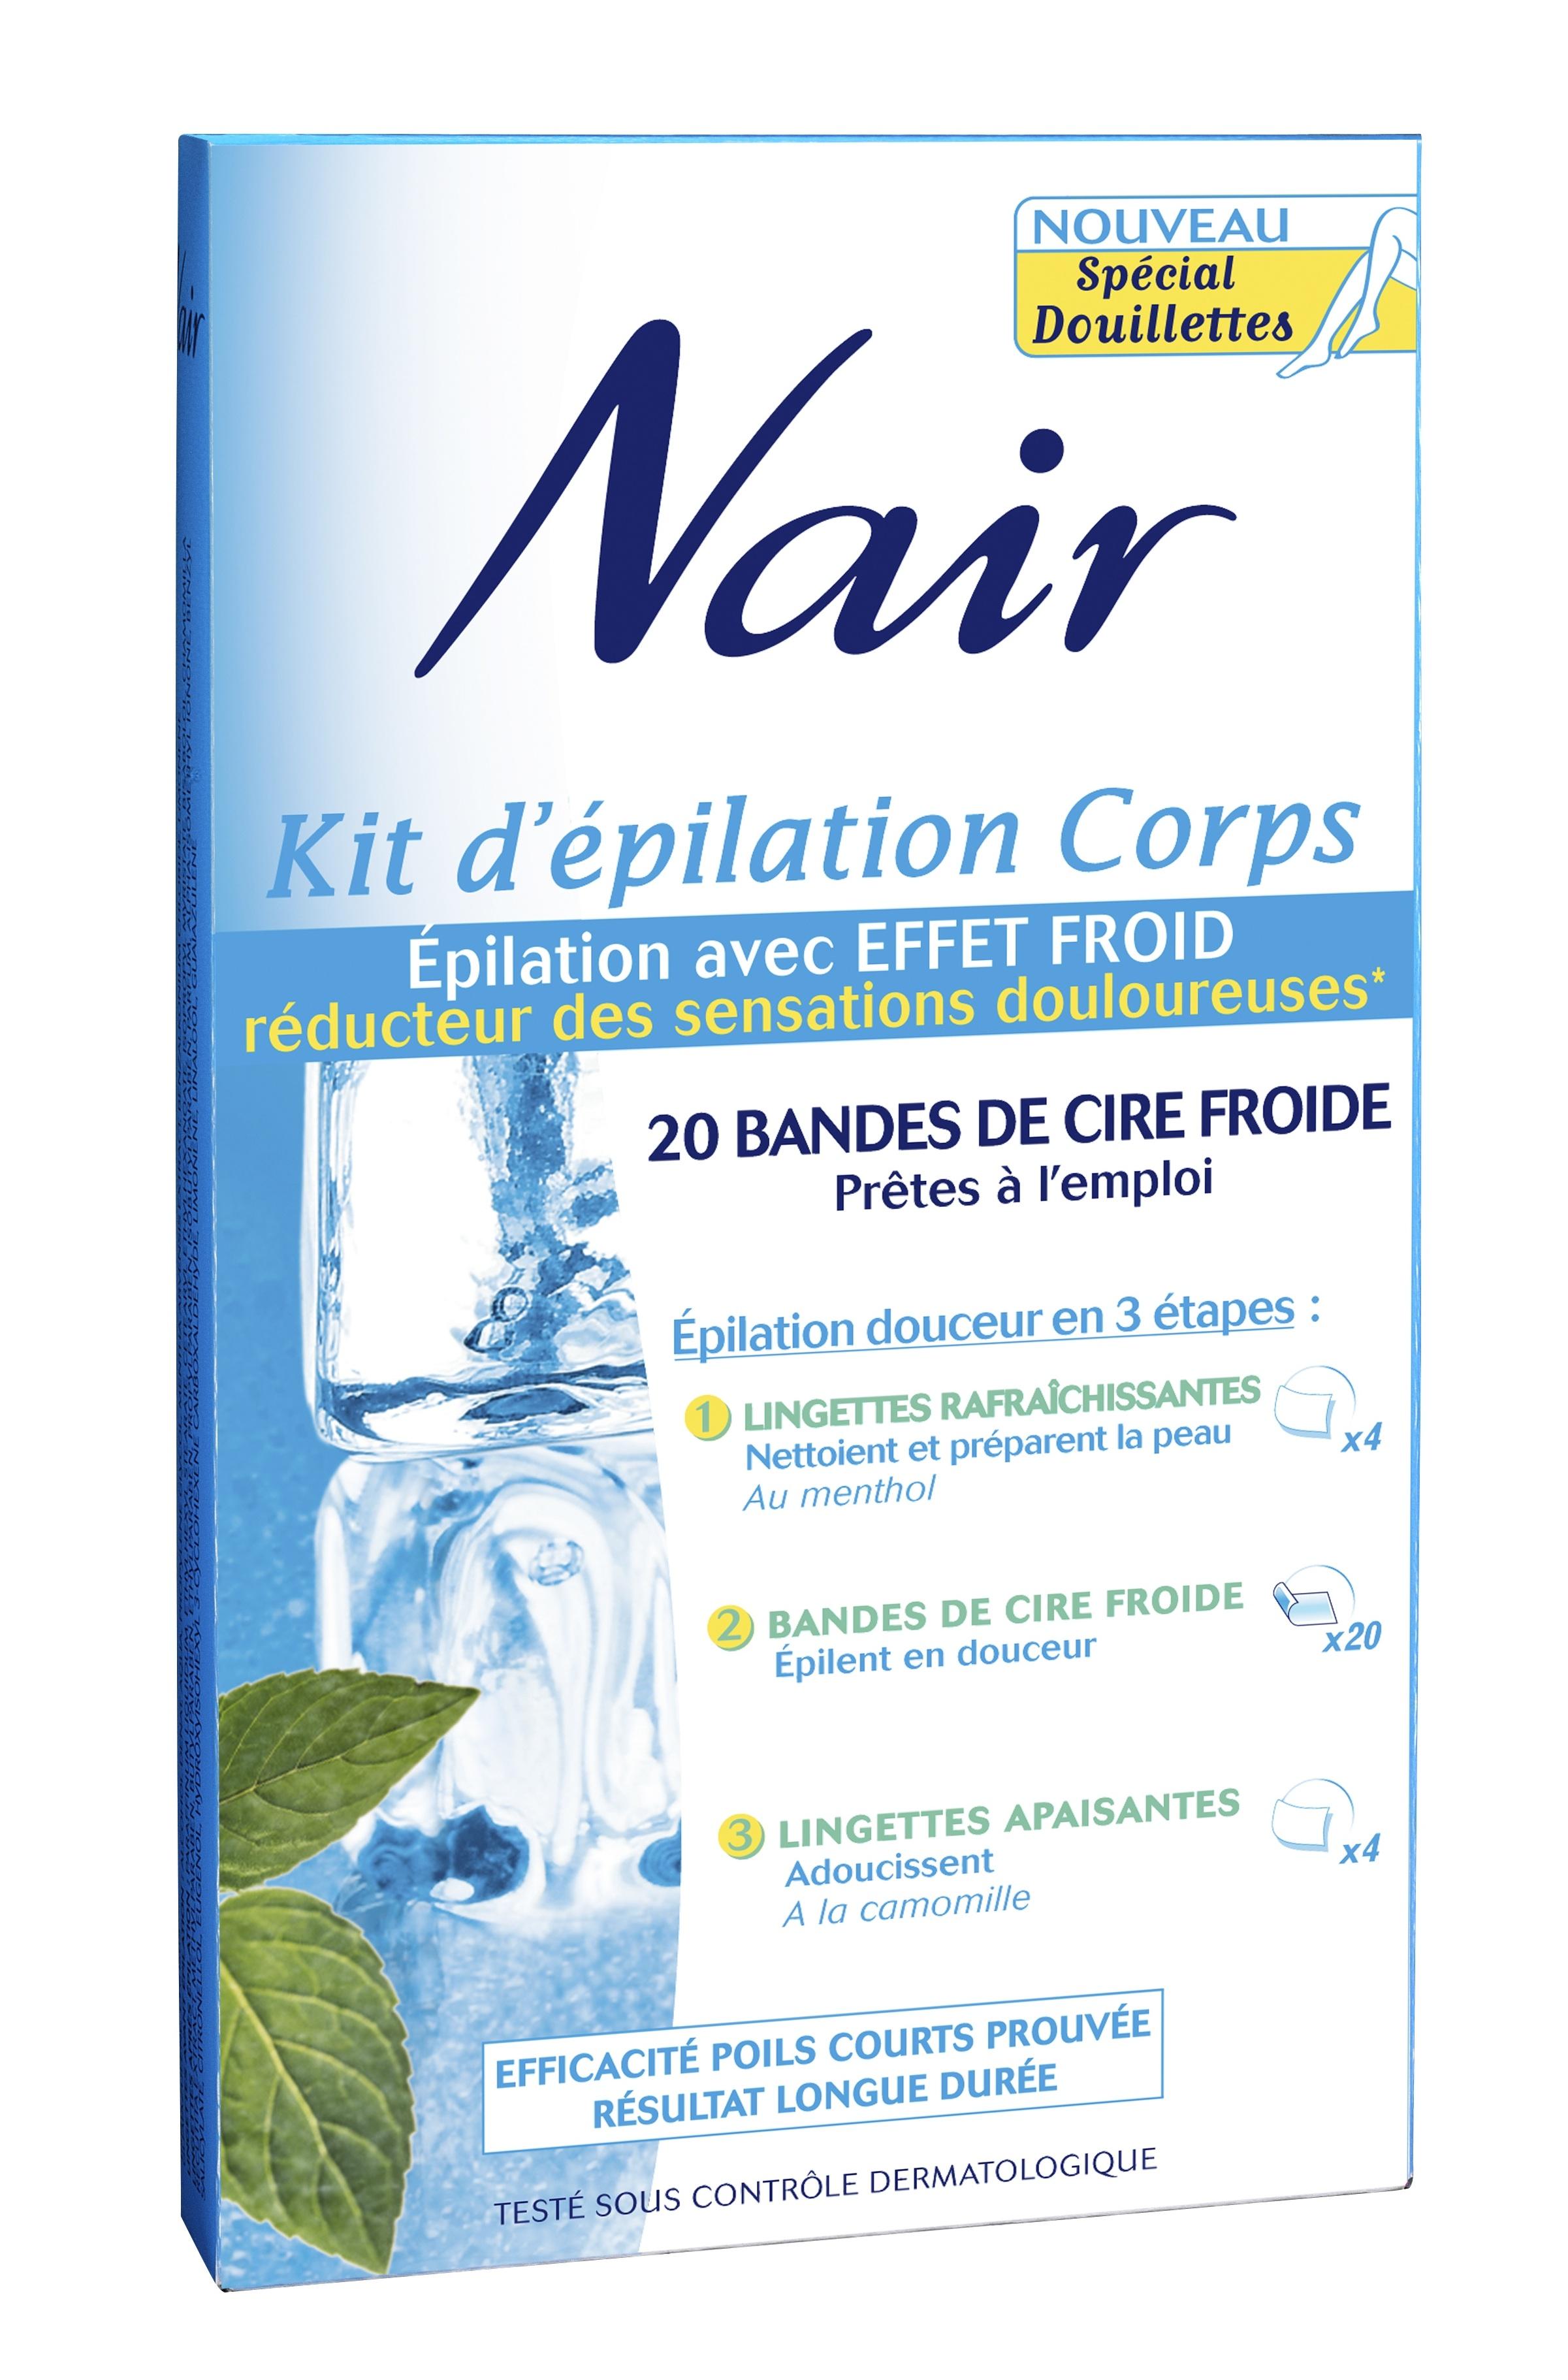 Test | Le Kit d’epilation Corps de Nair